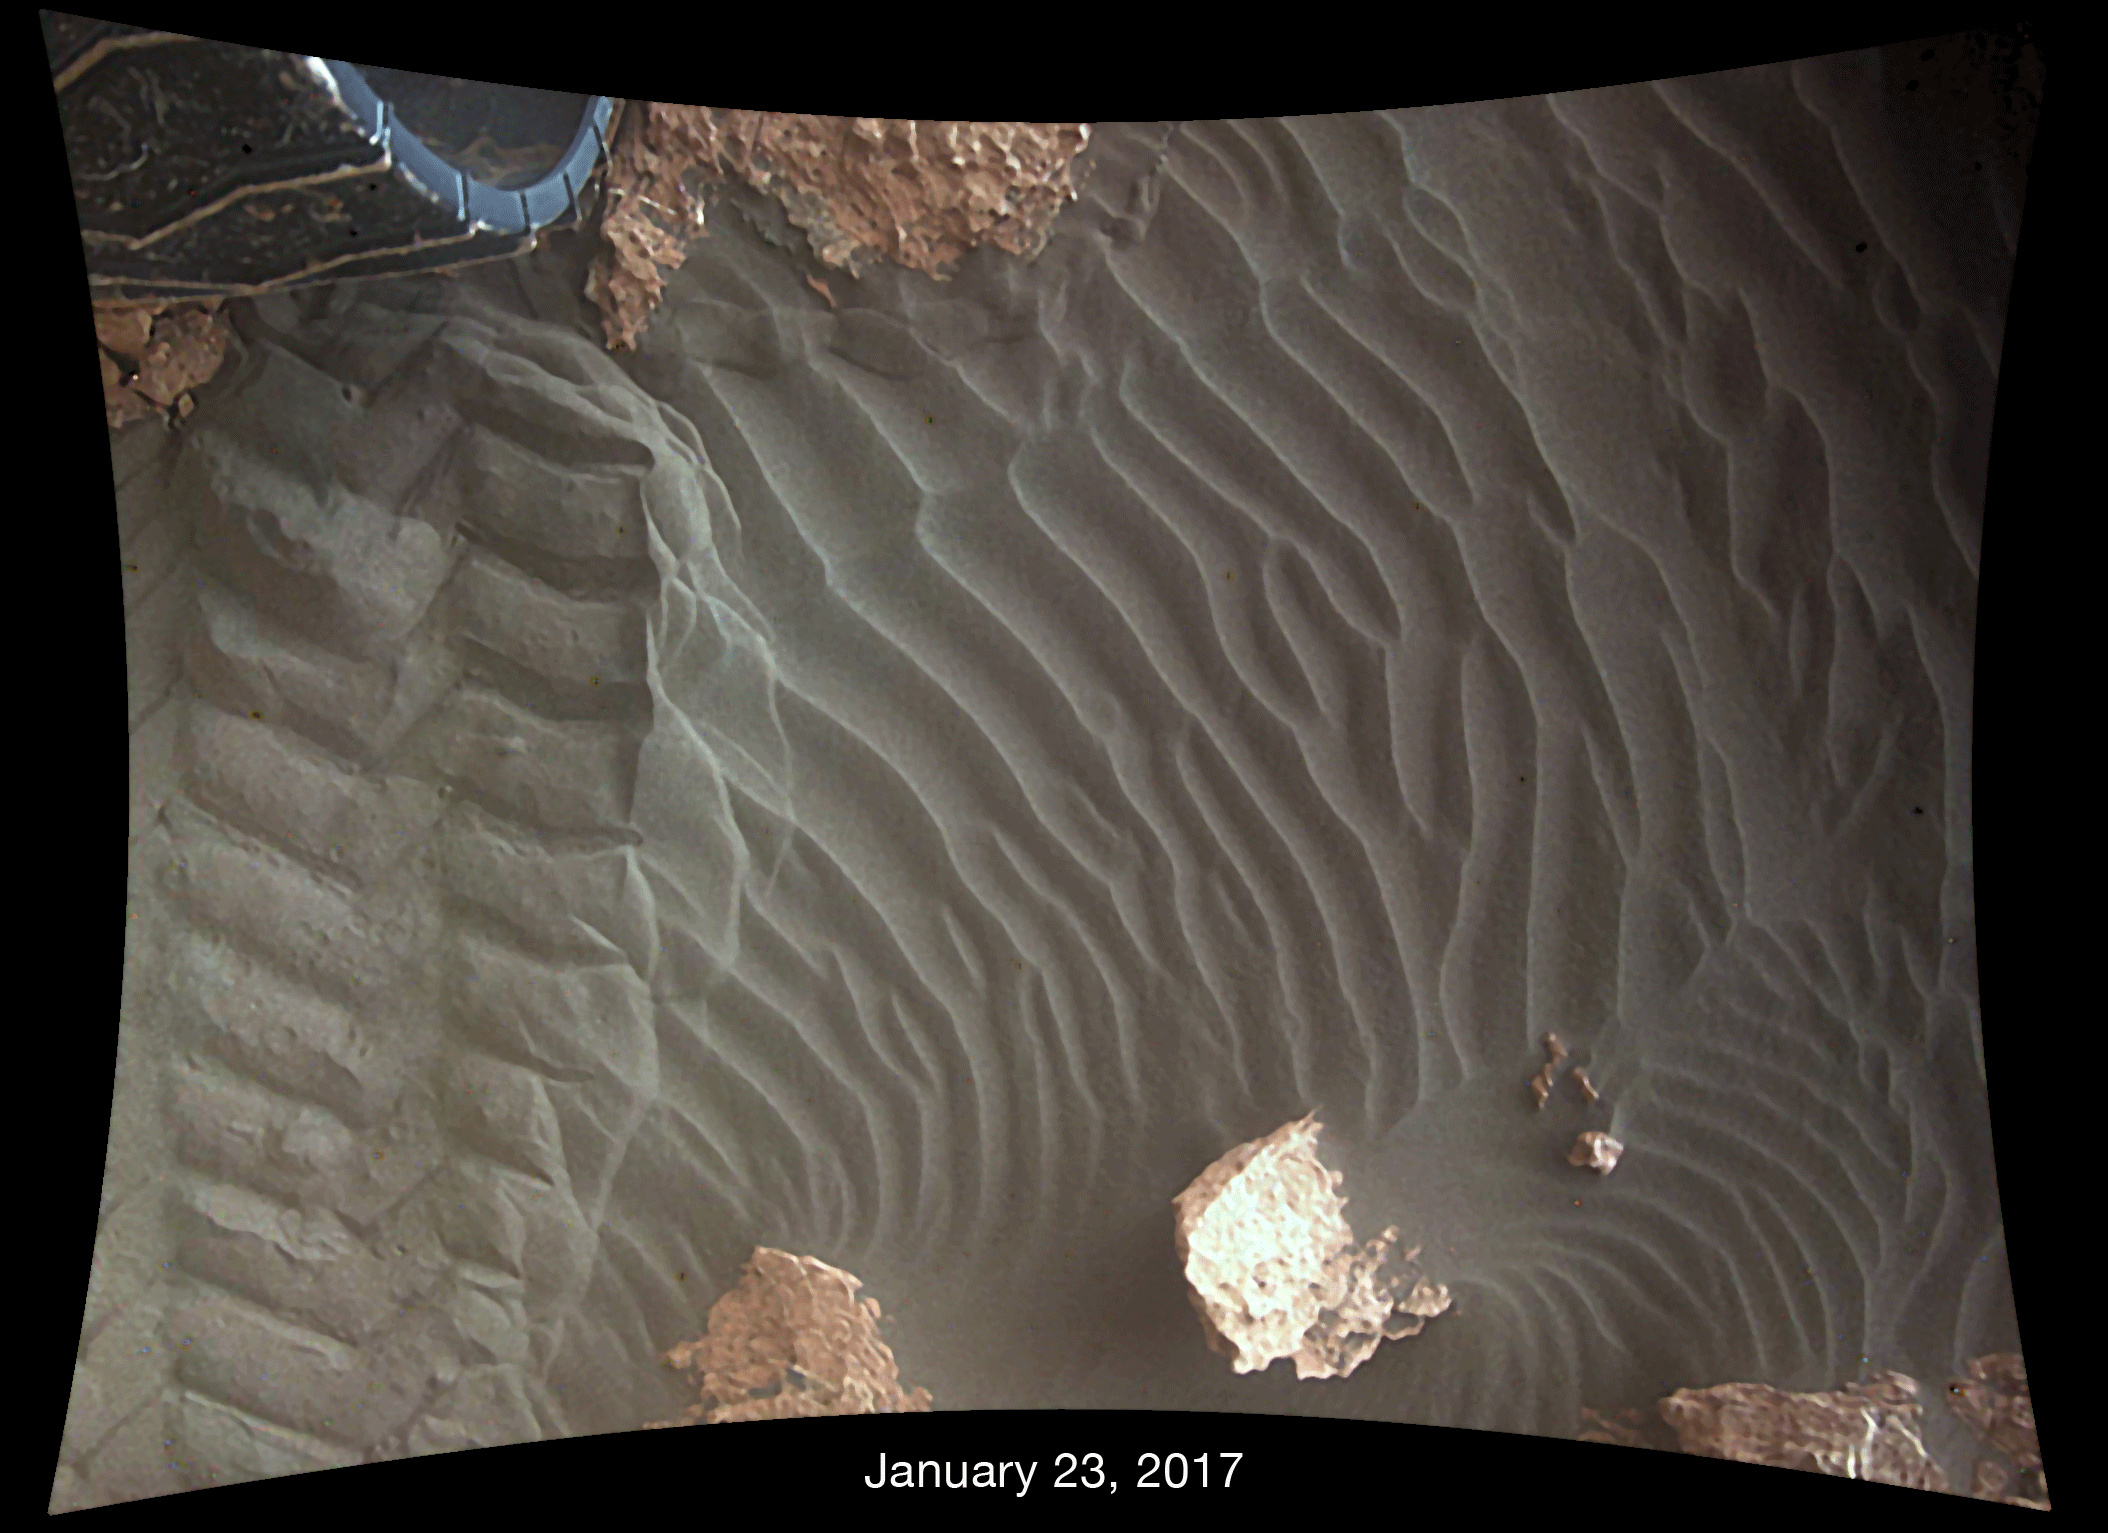 El viento desplaza la arena debajo de las ruedas del rover Curiosity de la NASA en Marte